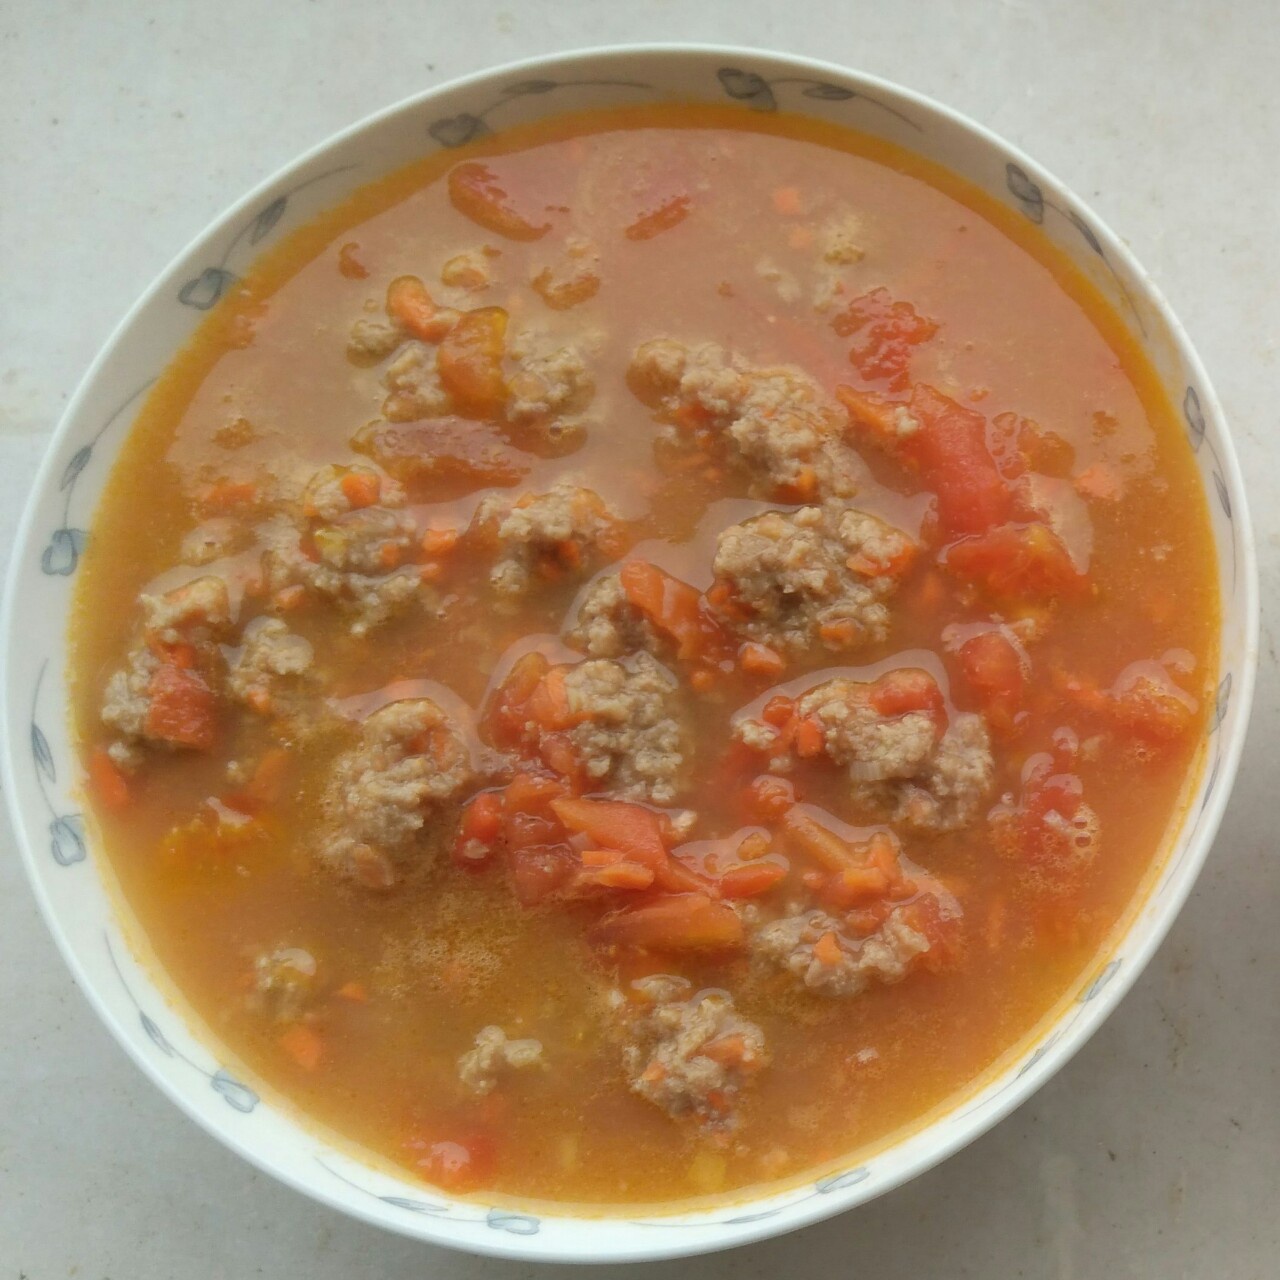 番茄牛肉丸汤